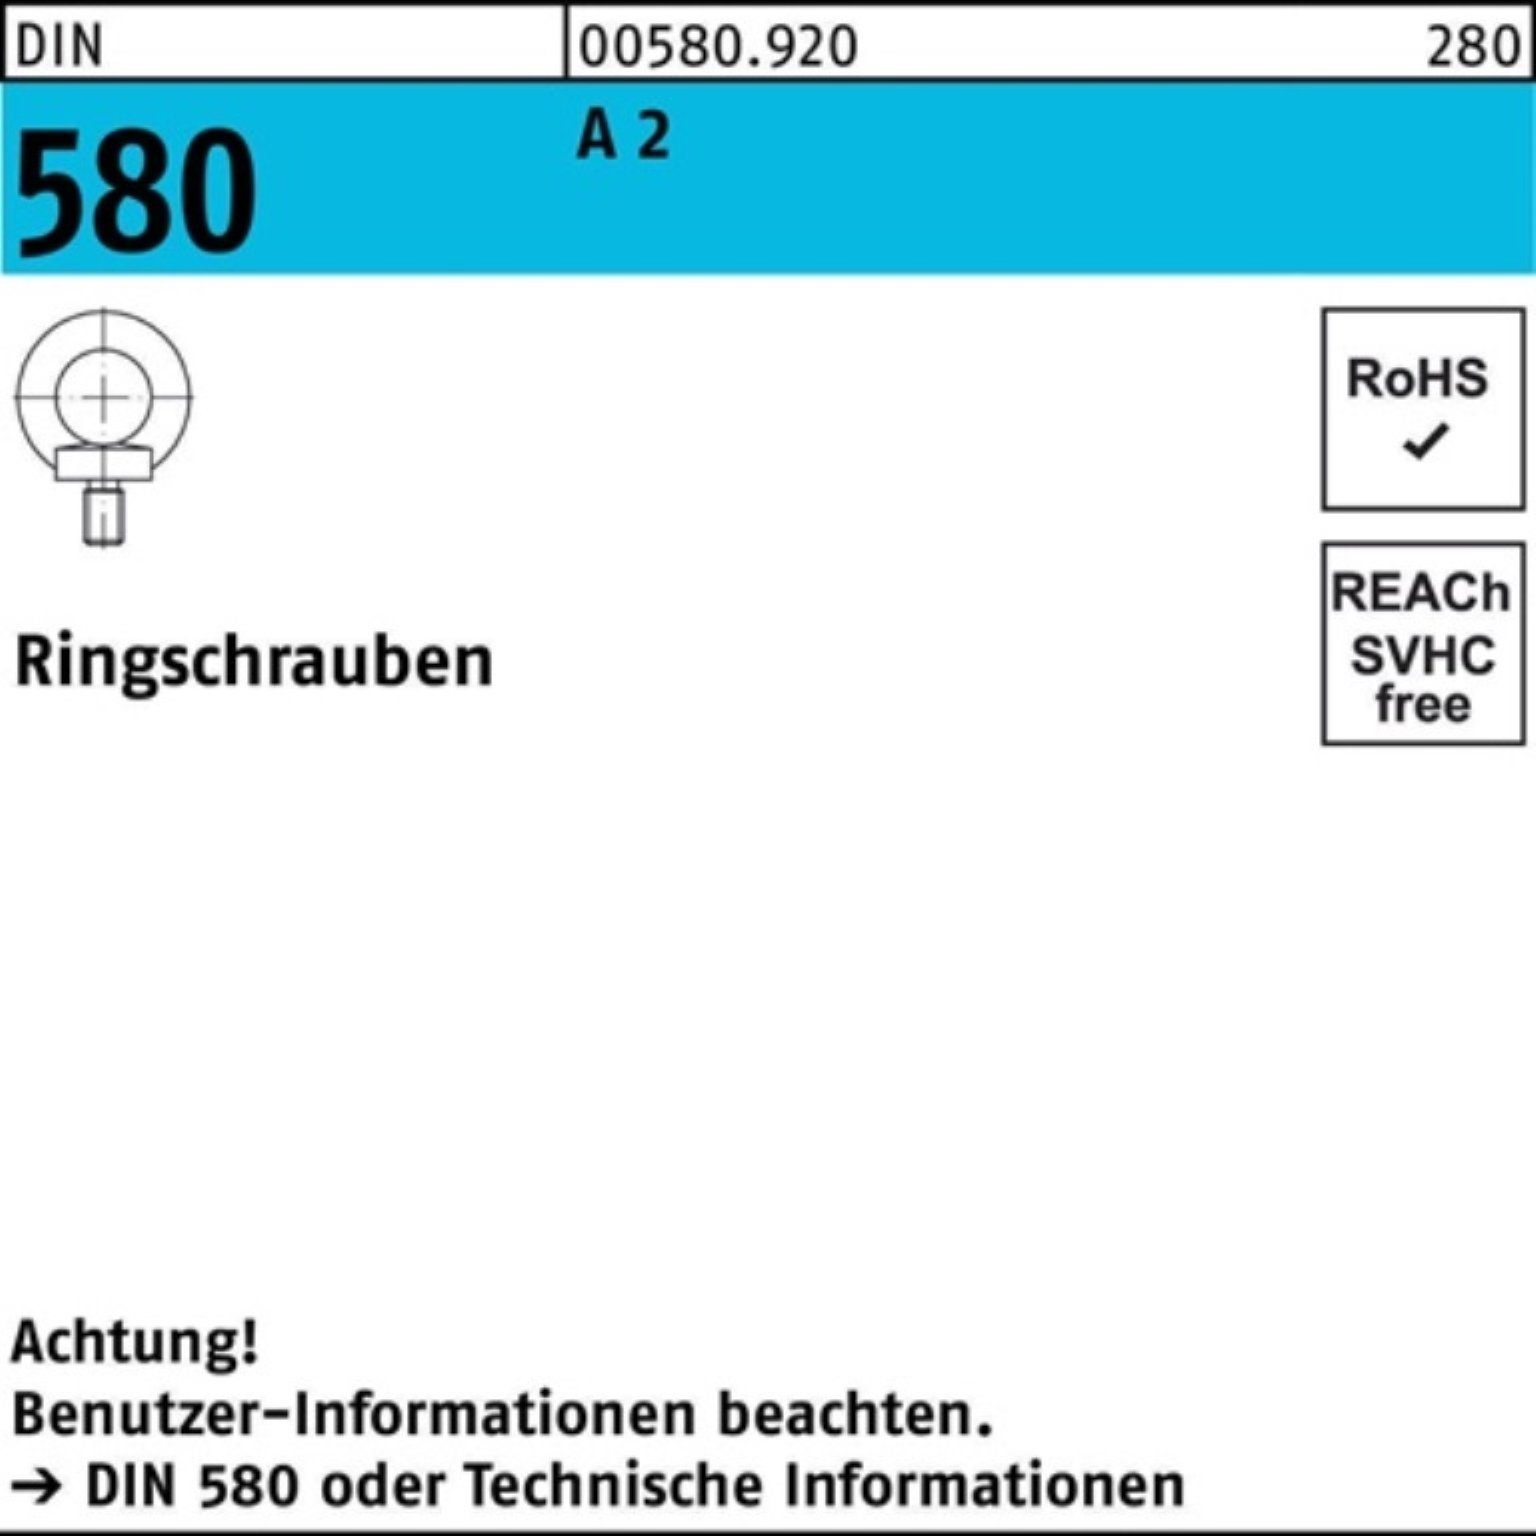 Reyher Schraube 100er Pack Ringschraube DIN 580 M24 A 2 1 Stück DIN 580 A 2 Ringschra